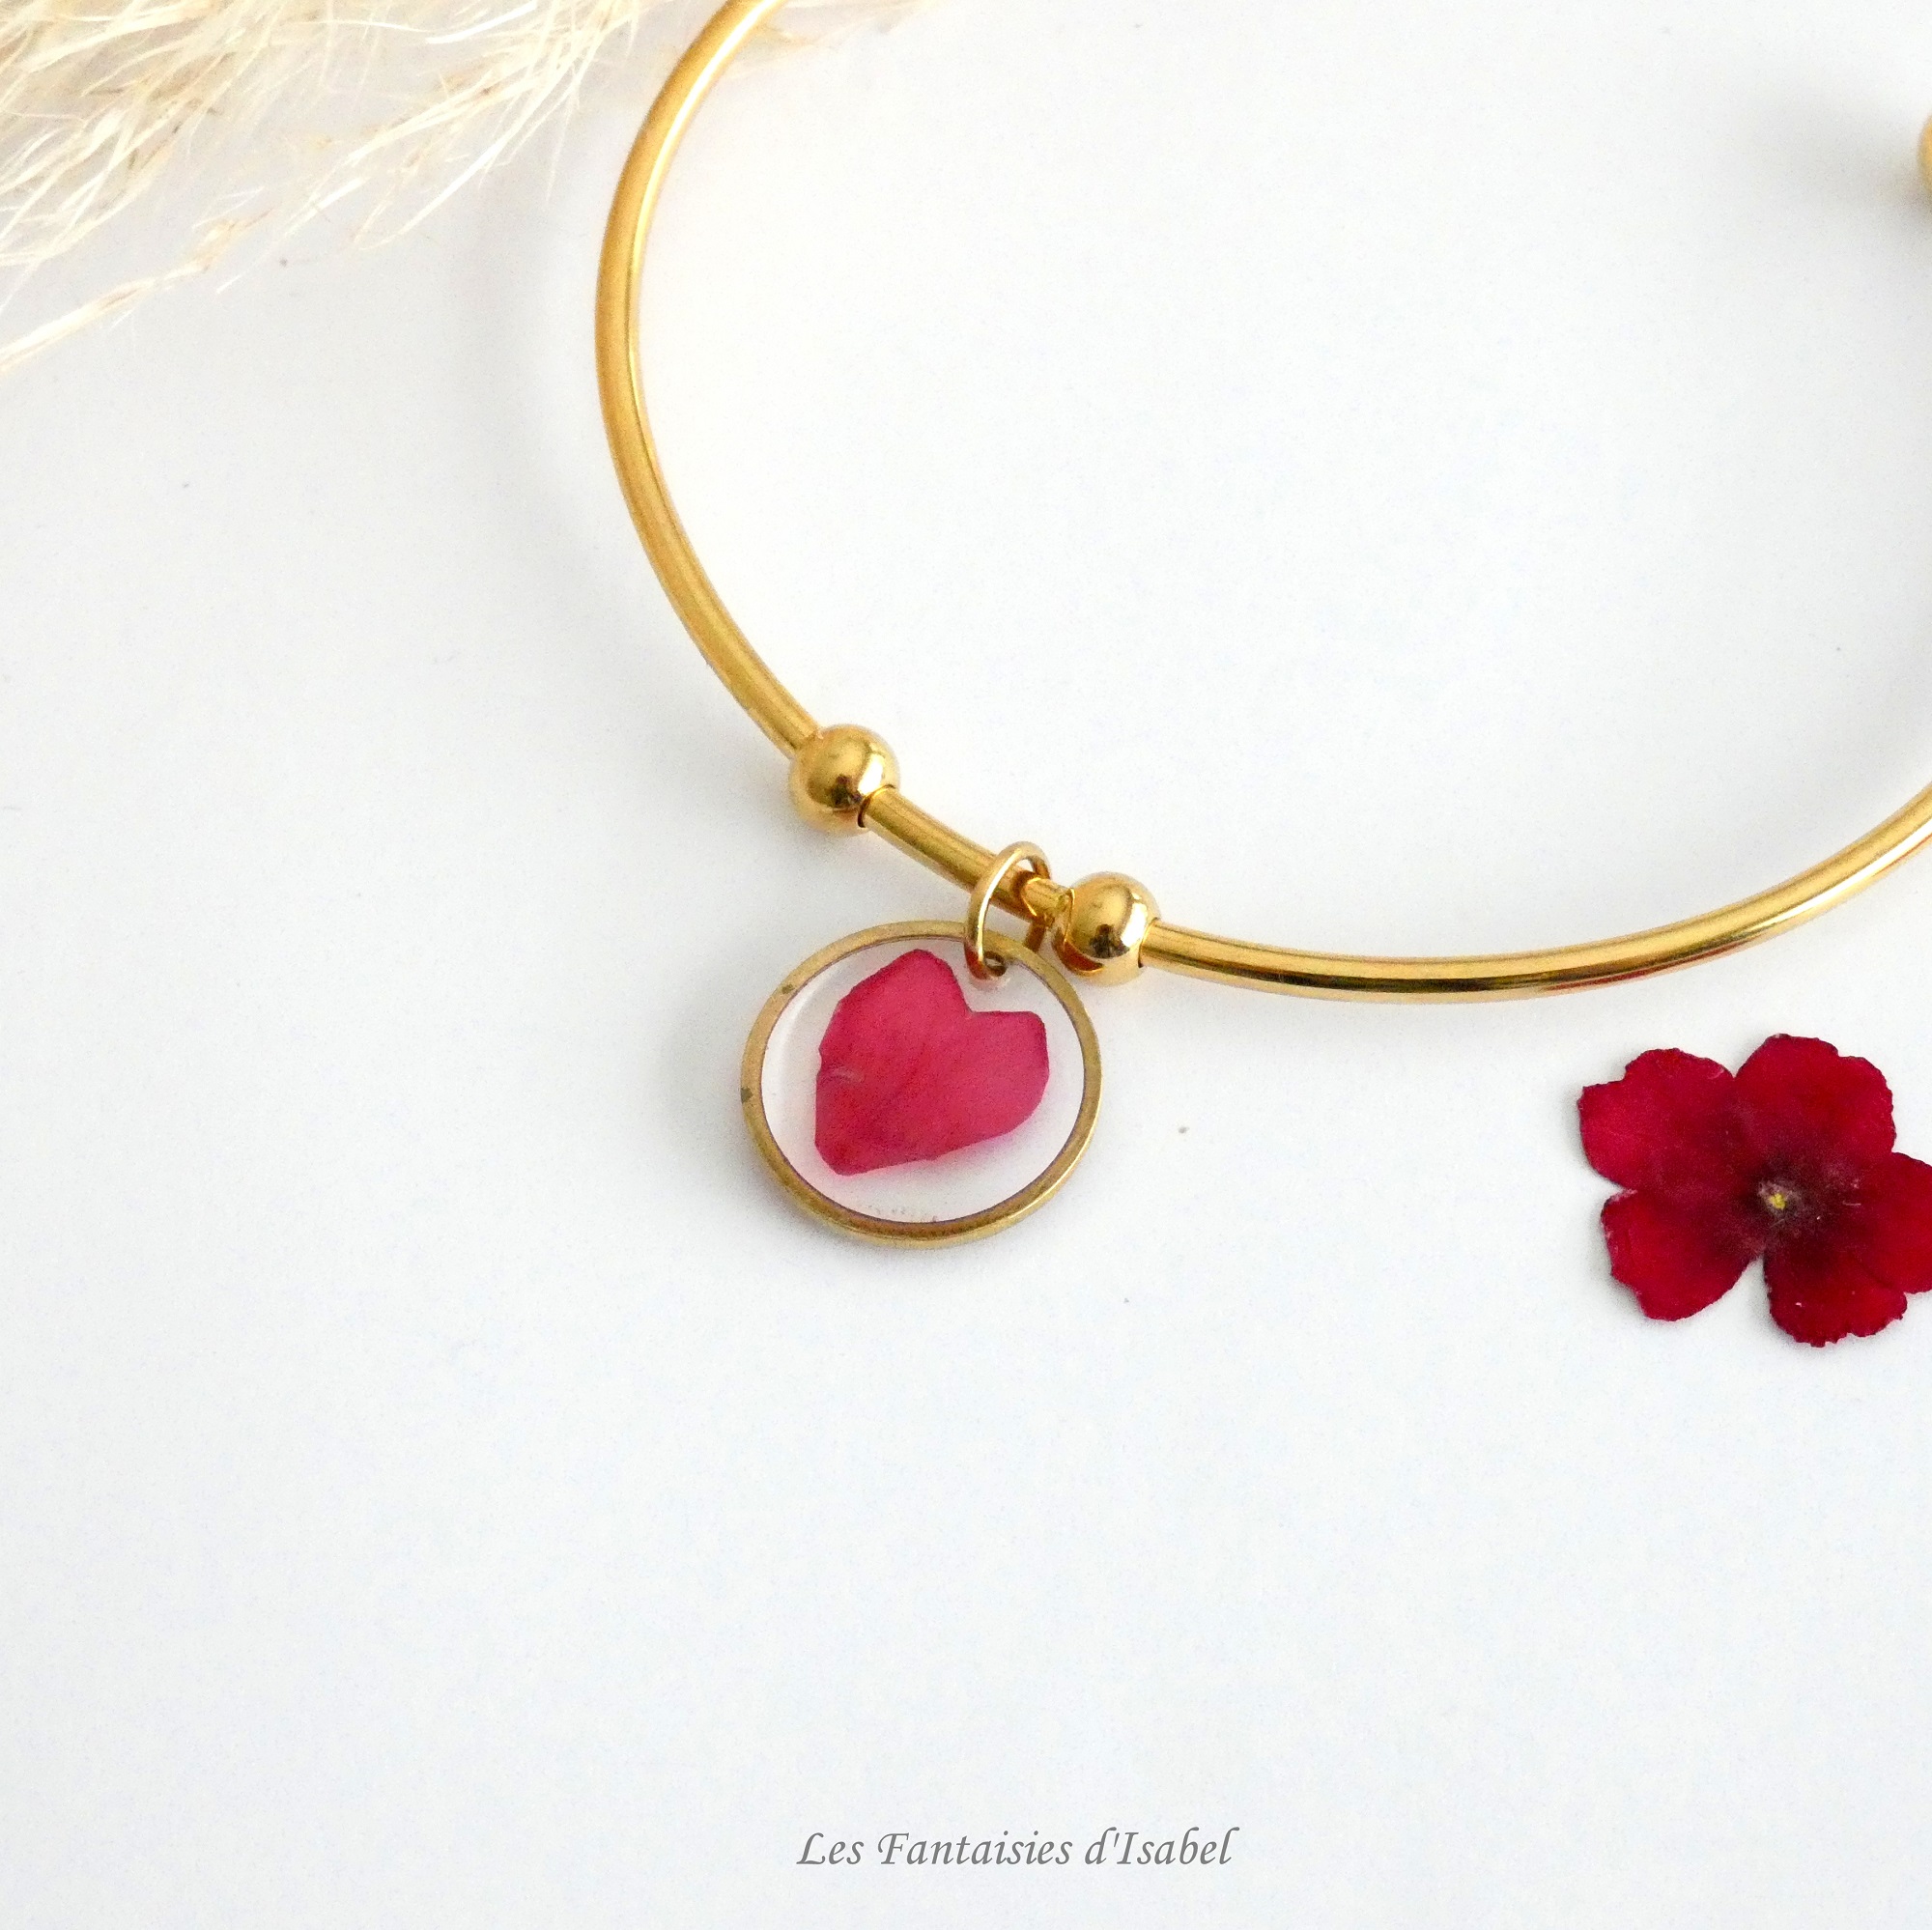 34-bracelet jonc doré acier inox pétale fleur verveine rouge artisanal landes détail